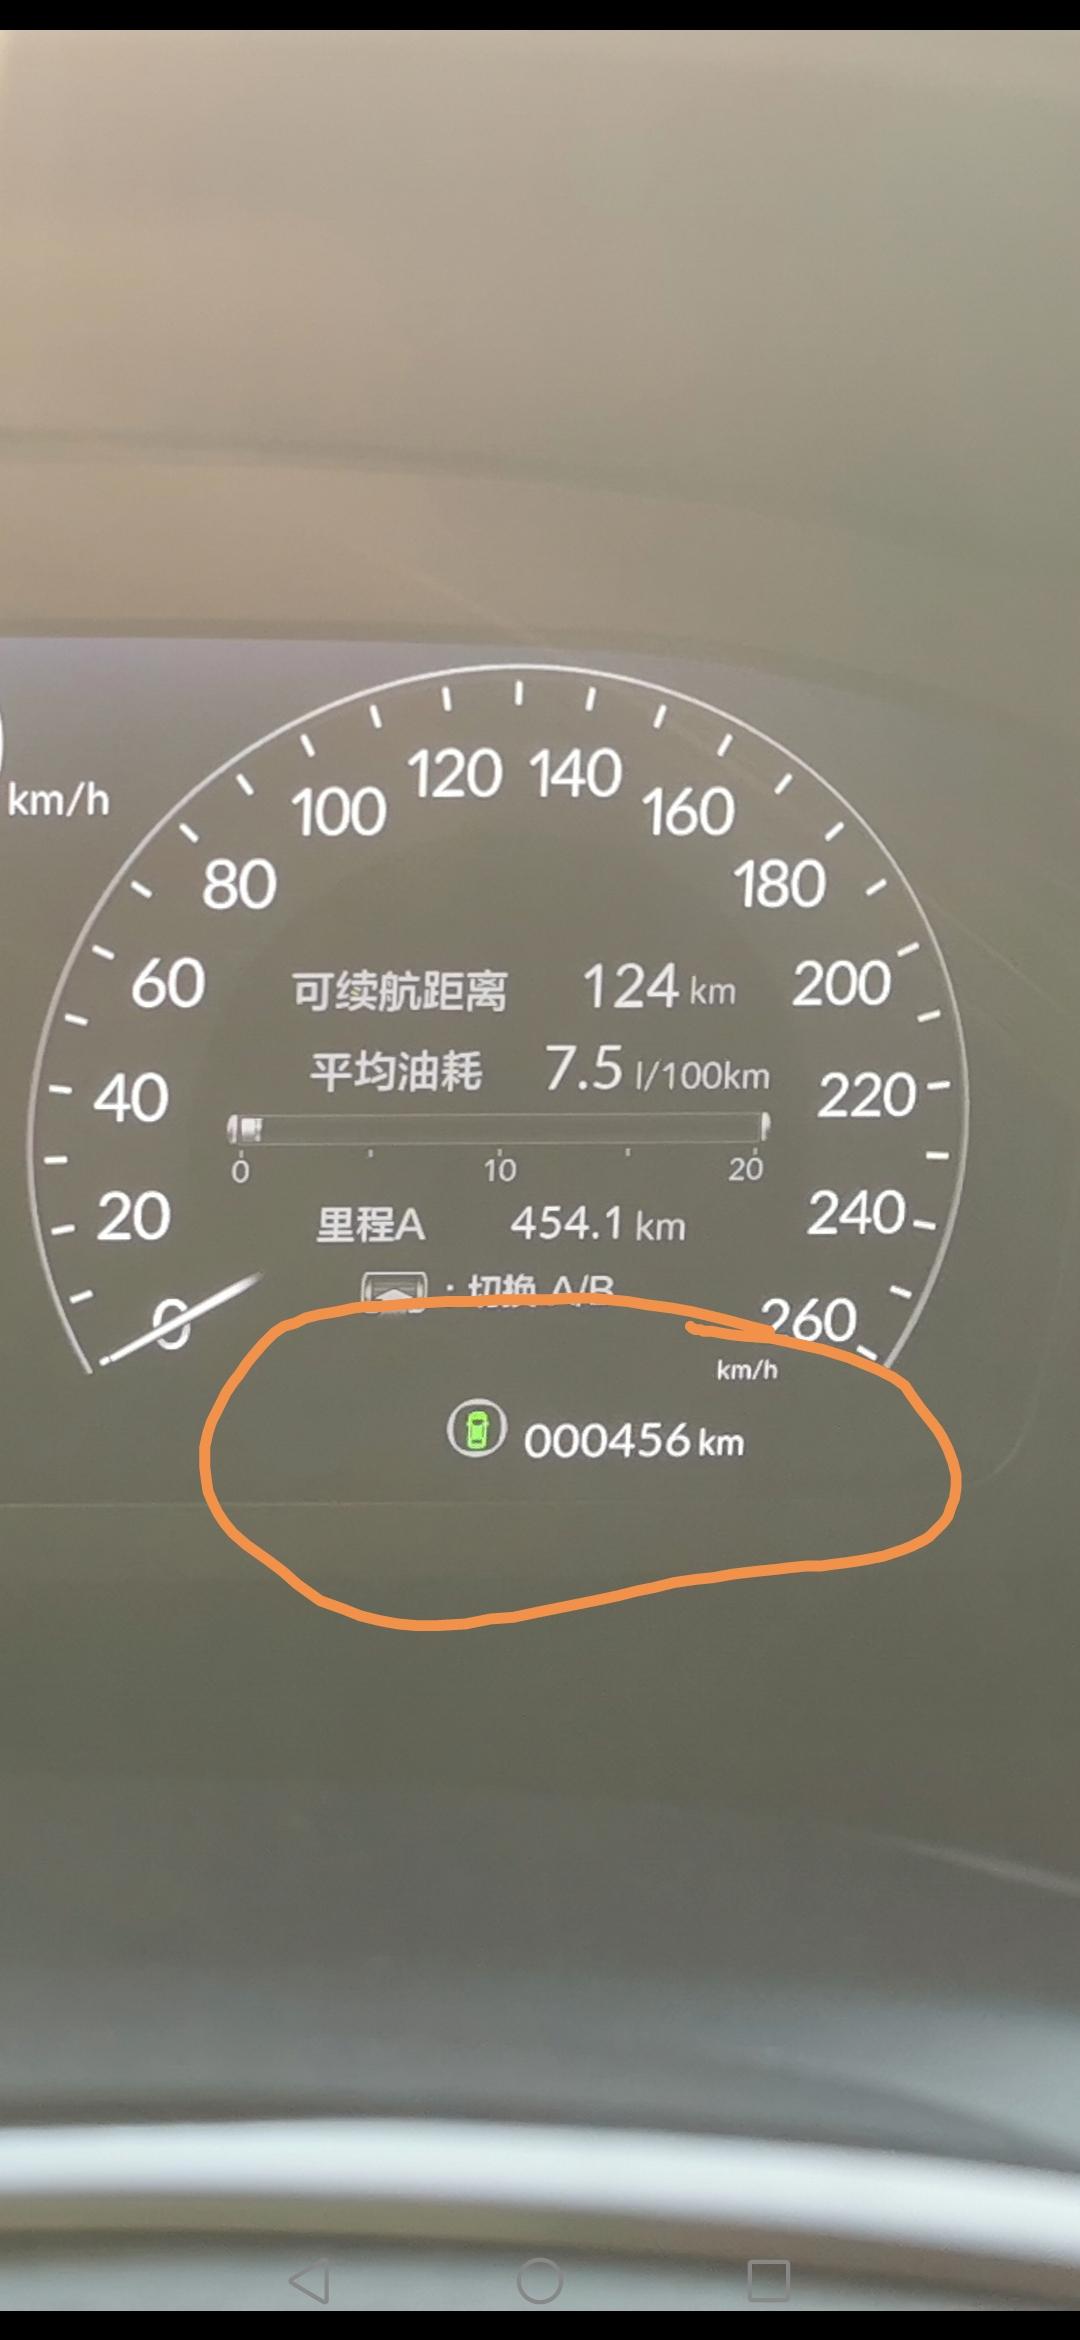 本田型格 这是行驶的总公里数吗